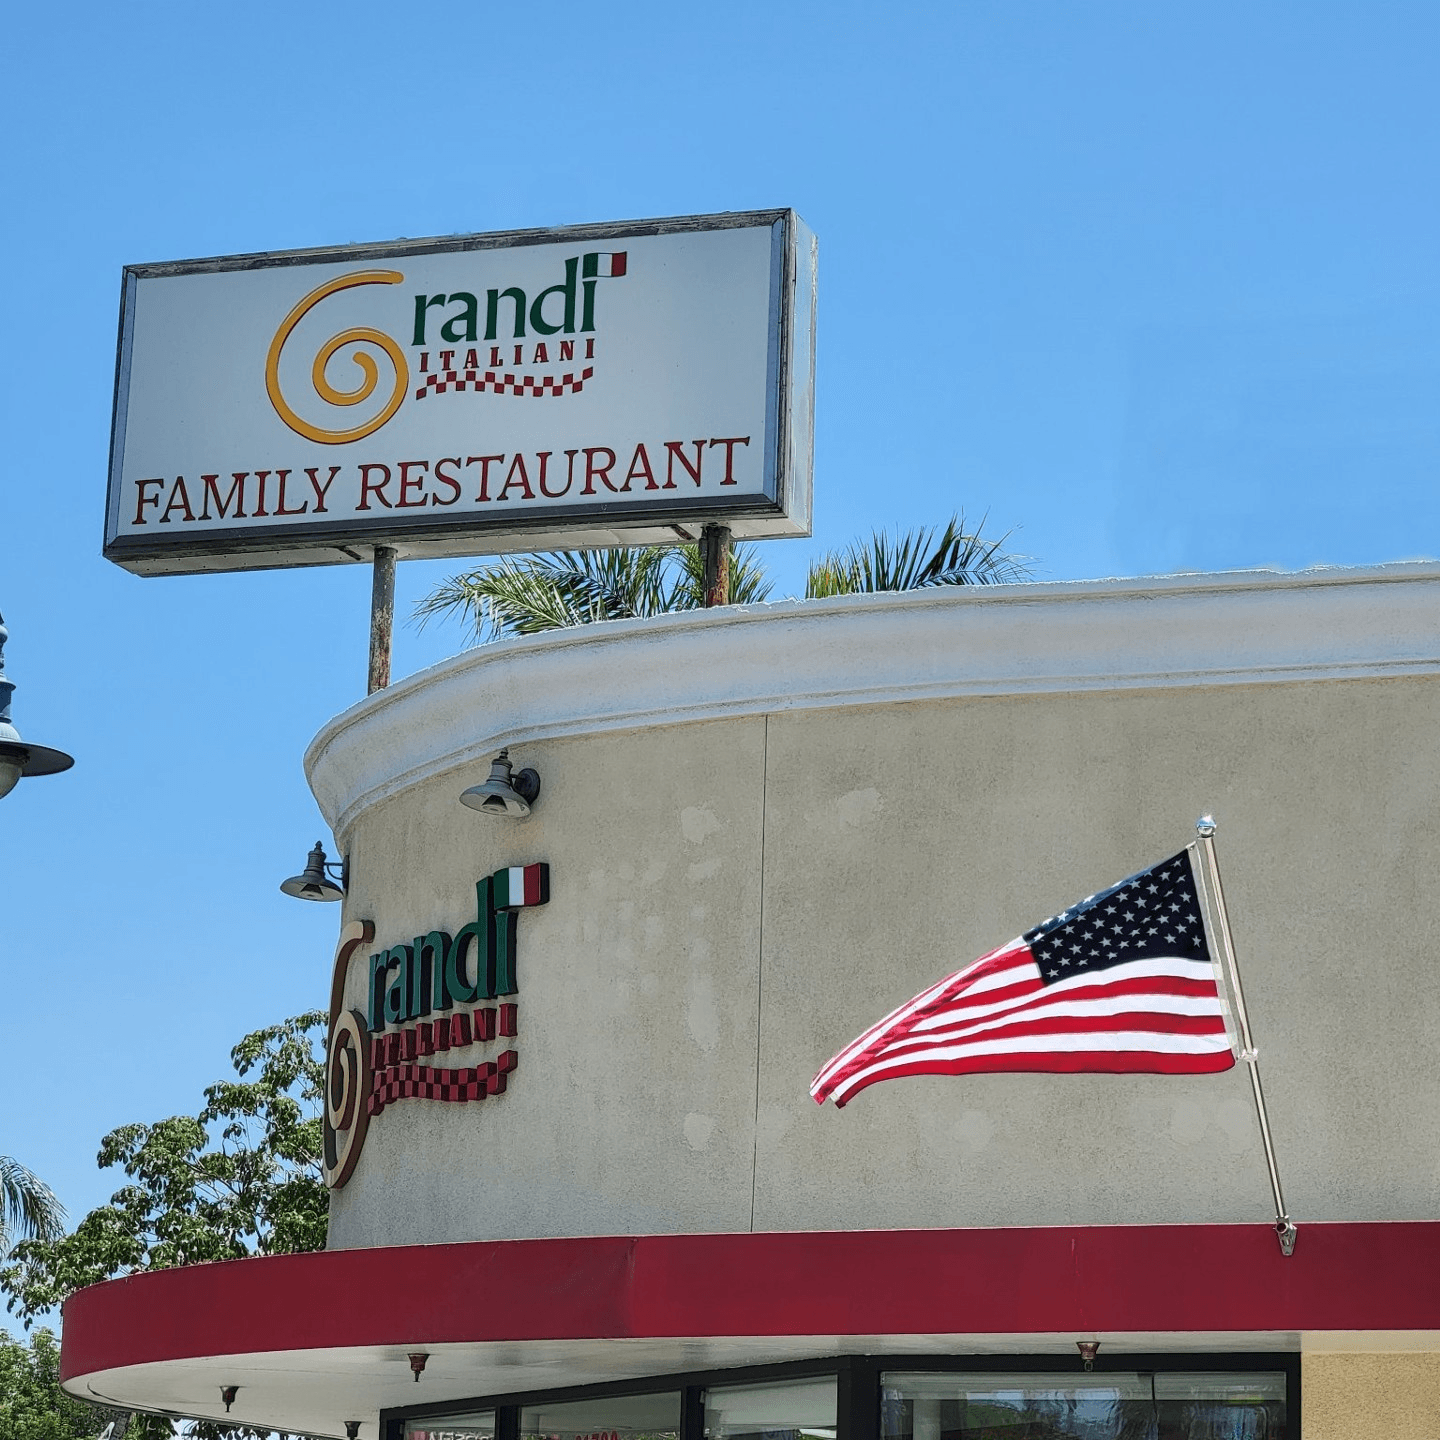 Italian Restaurants in Sherman Oaks Serving Gluten-Free Options